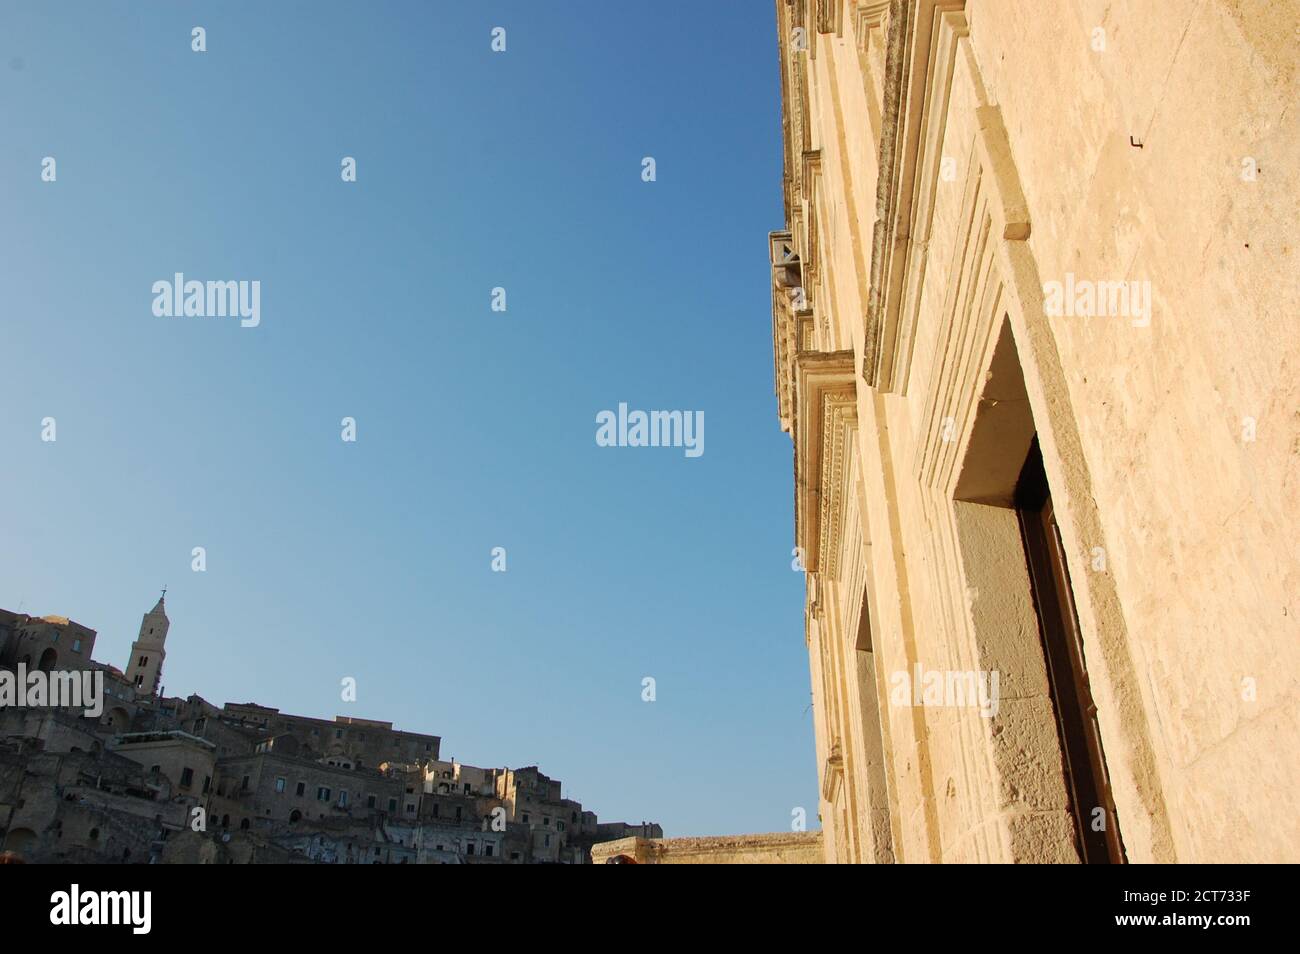 Vista panoramica urbana di Matera con la facciata della chiesa Da un lato e le case e la Cattedrale dall'altro e. cielo blu chiaro al centro Foto Stock